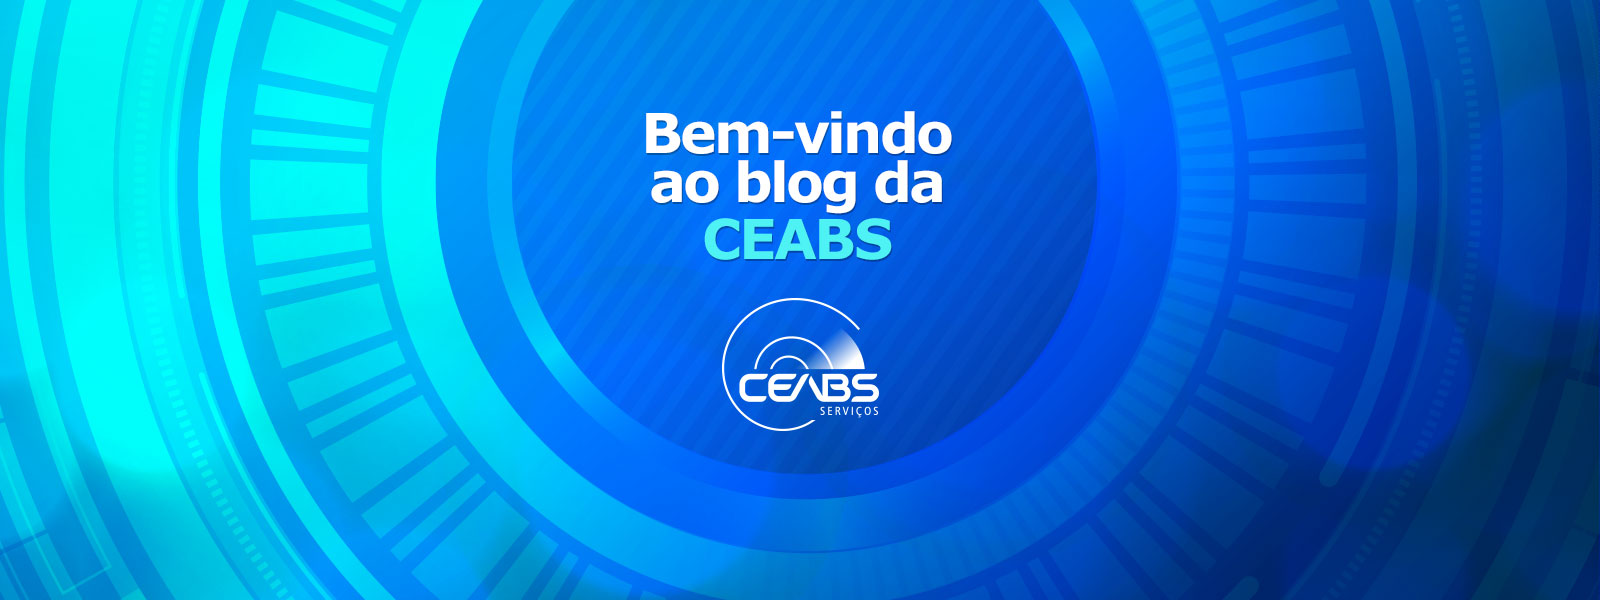 Seja bem-vindo ao blog da CEABS